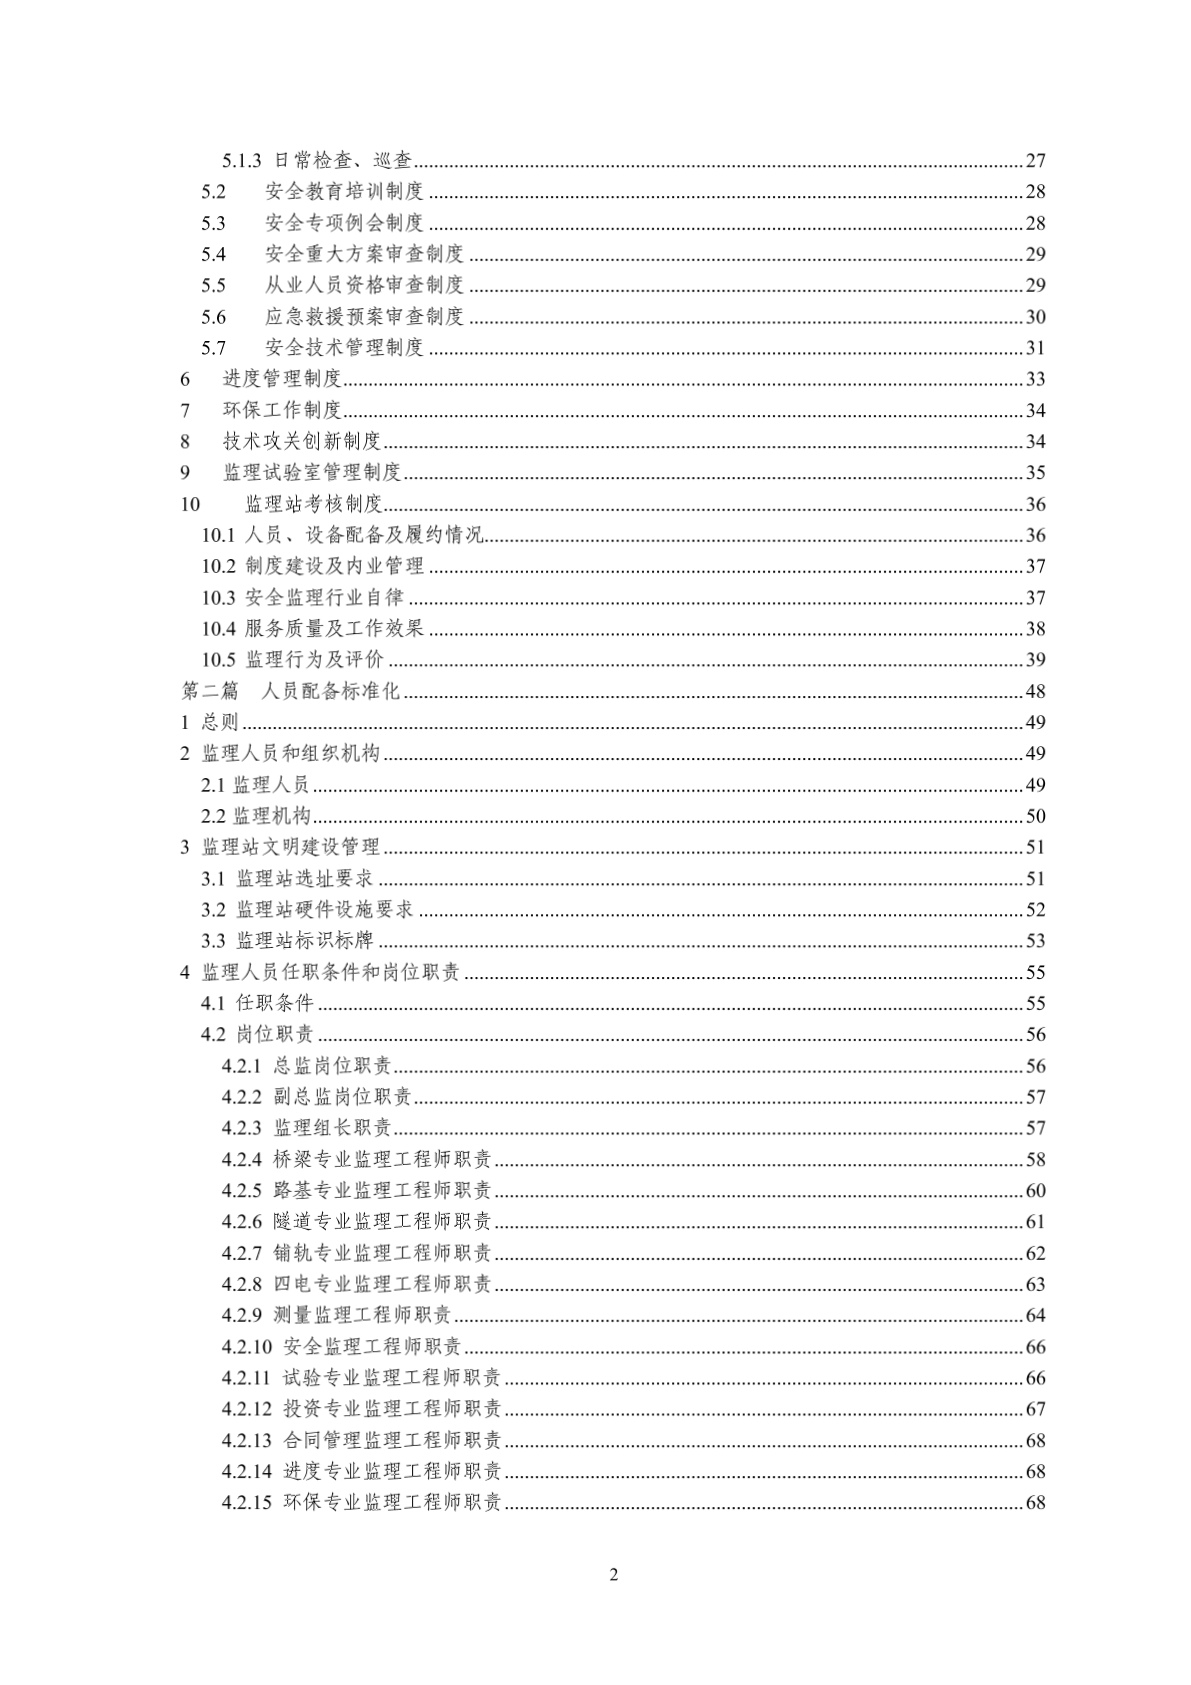 上海铁路局标准化监理站管理规定-图二